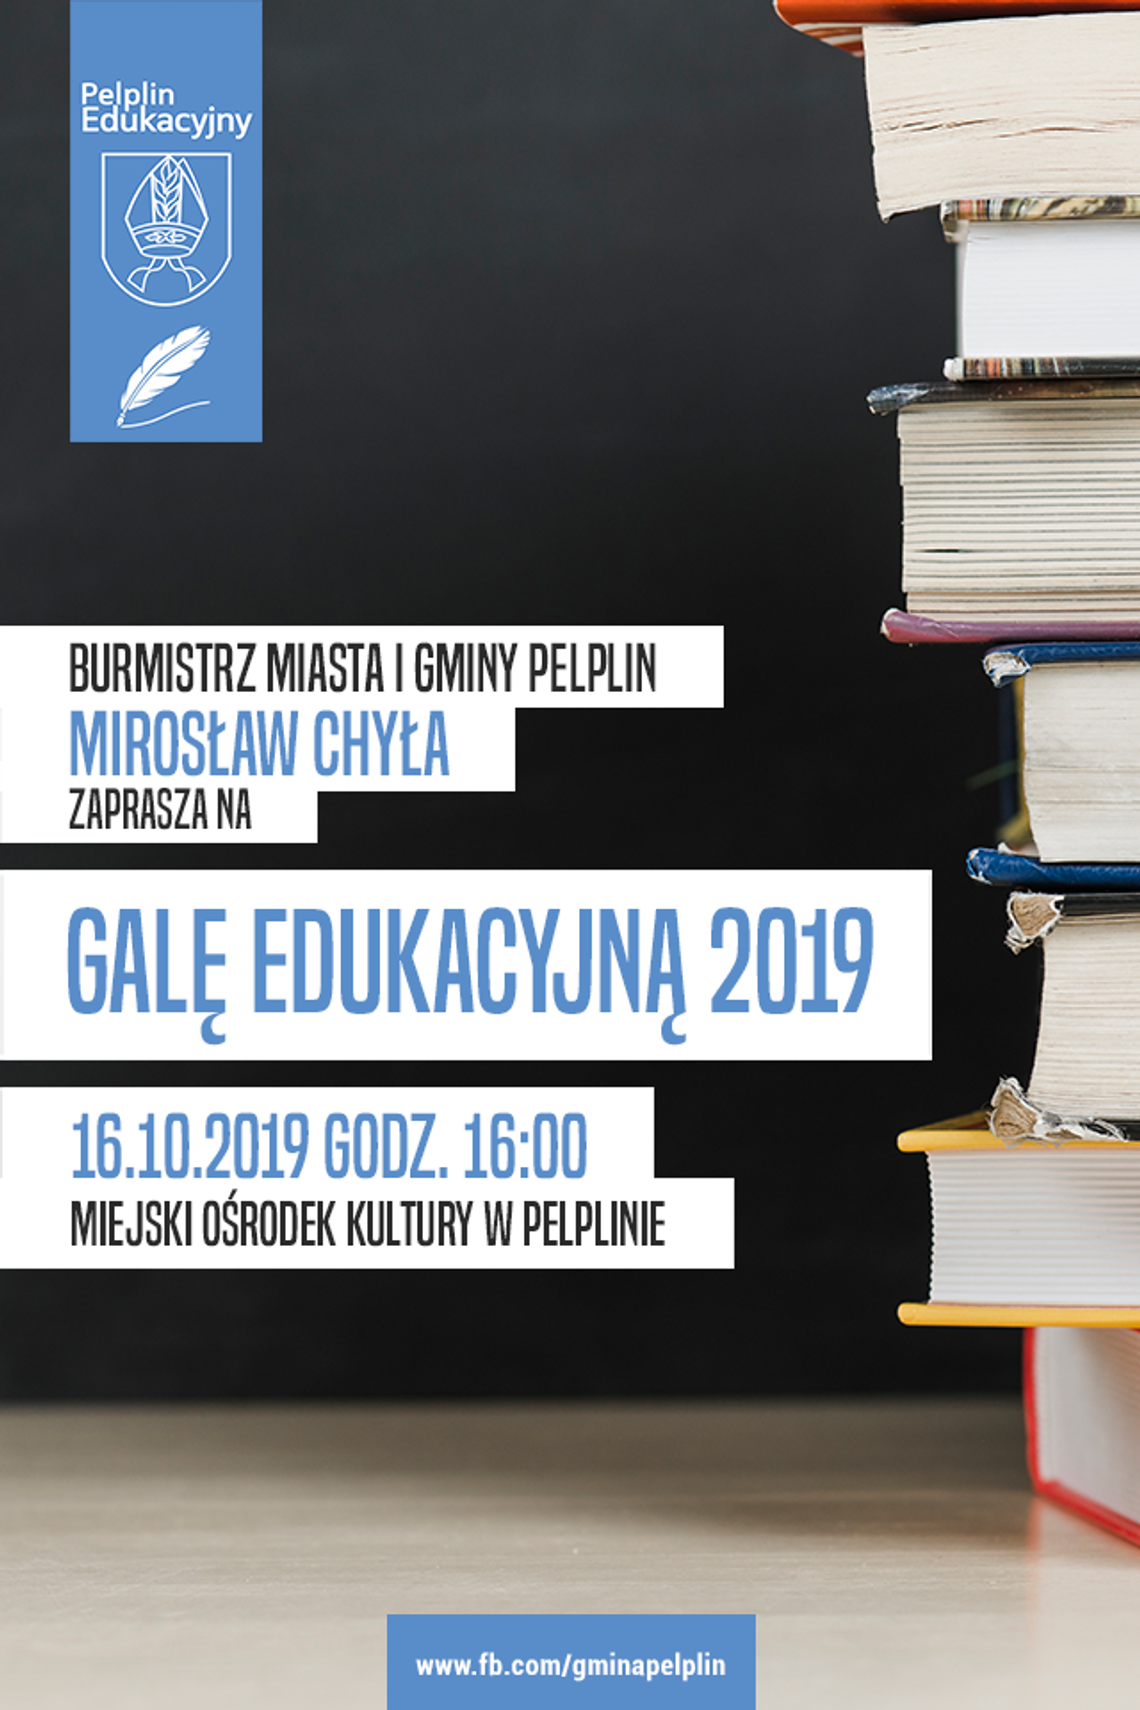 Gala Edukacyjna w Pelplinie